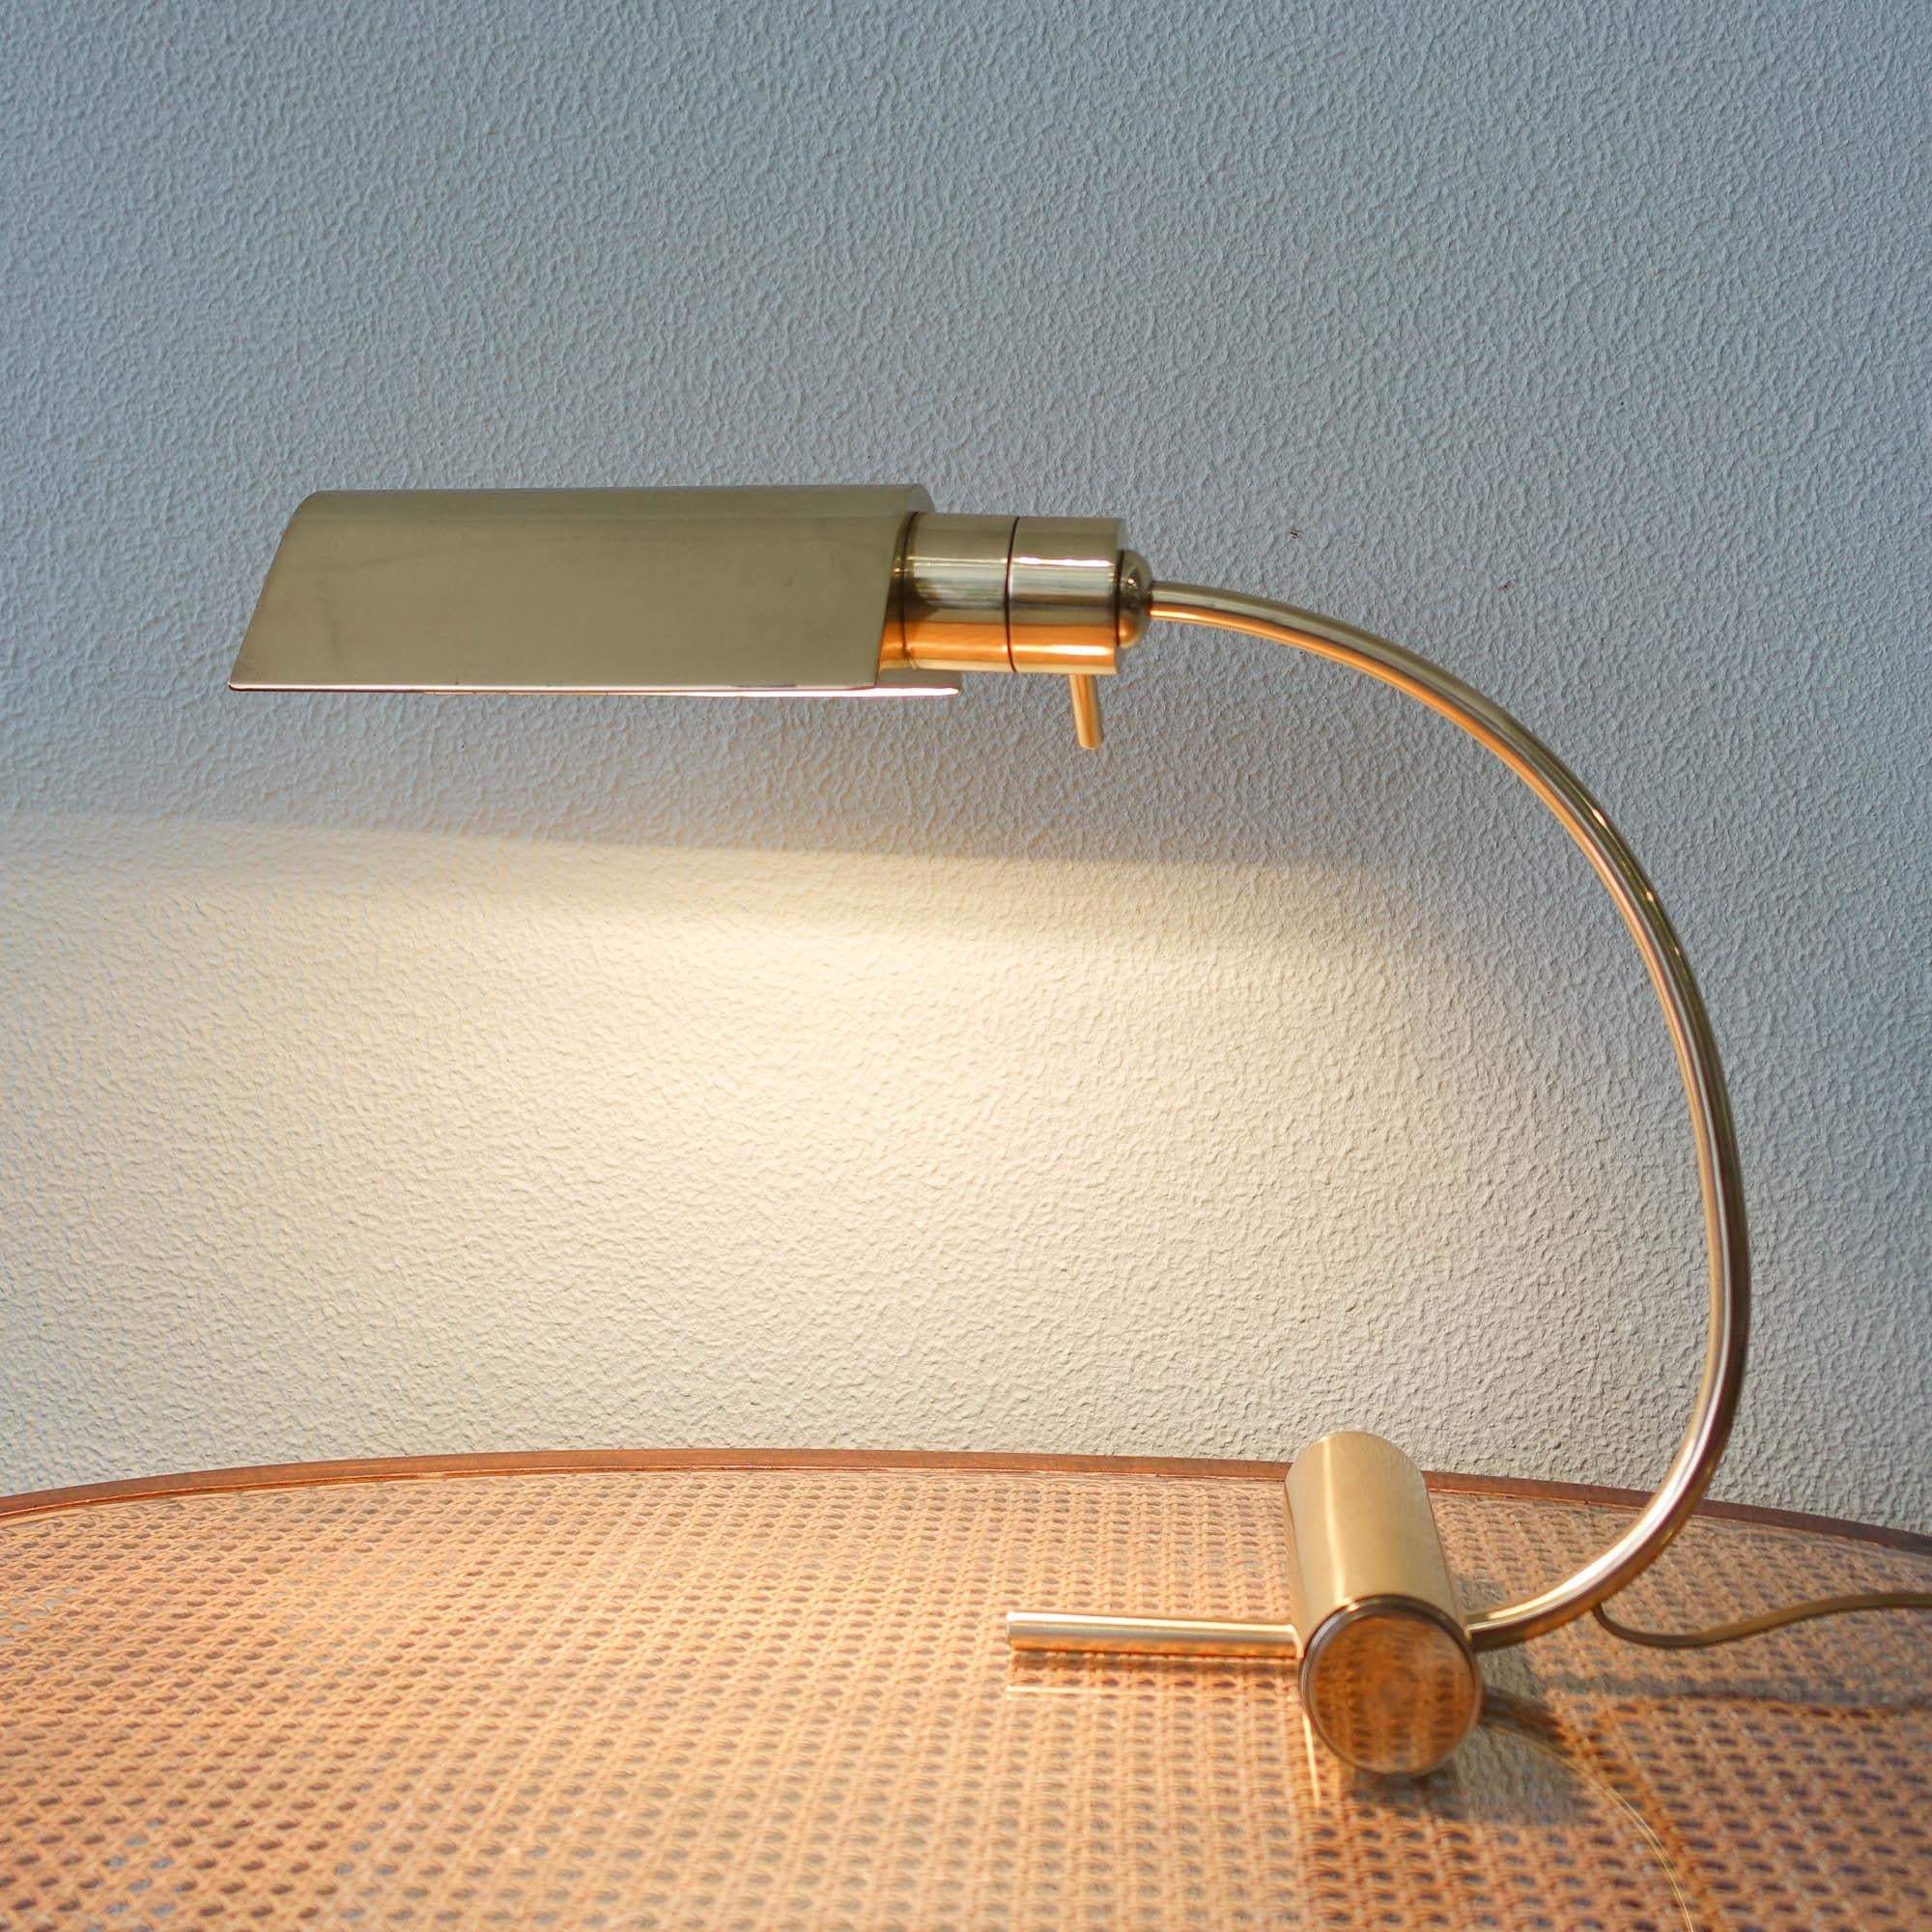 Cette lampe de table a été conçue et produite par Boulanger en Belgique, dans les années 1960. Il comporte une base tubulaire cylindrique en laiton sur laquelle est fixé un bras en laiton courbé. Fini avec un abat-jour à prisme triangulaire avec